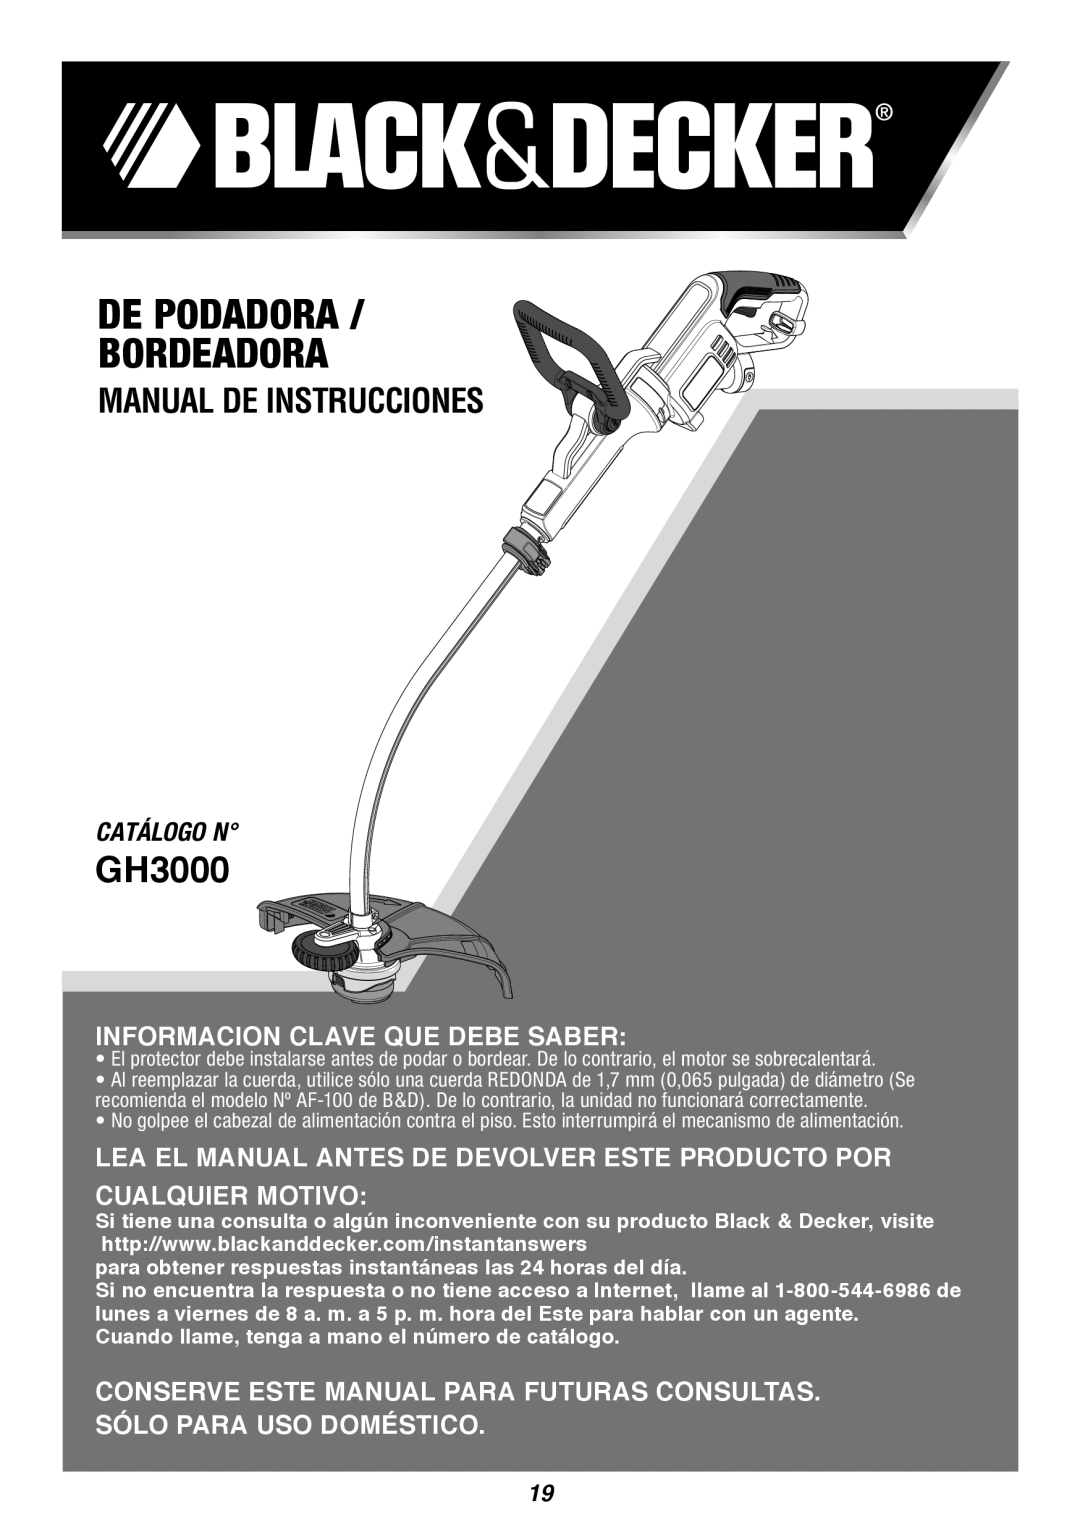 Black & Decker GH3000 De Podadora Bordeadora, Manual De Instrucciones, Catálogo N, Informacion Clave Que Debe Saber 